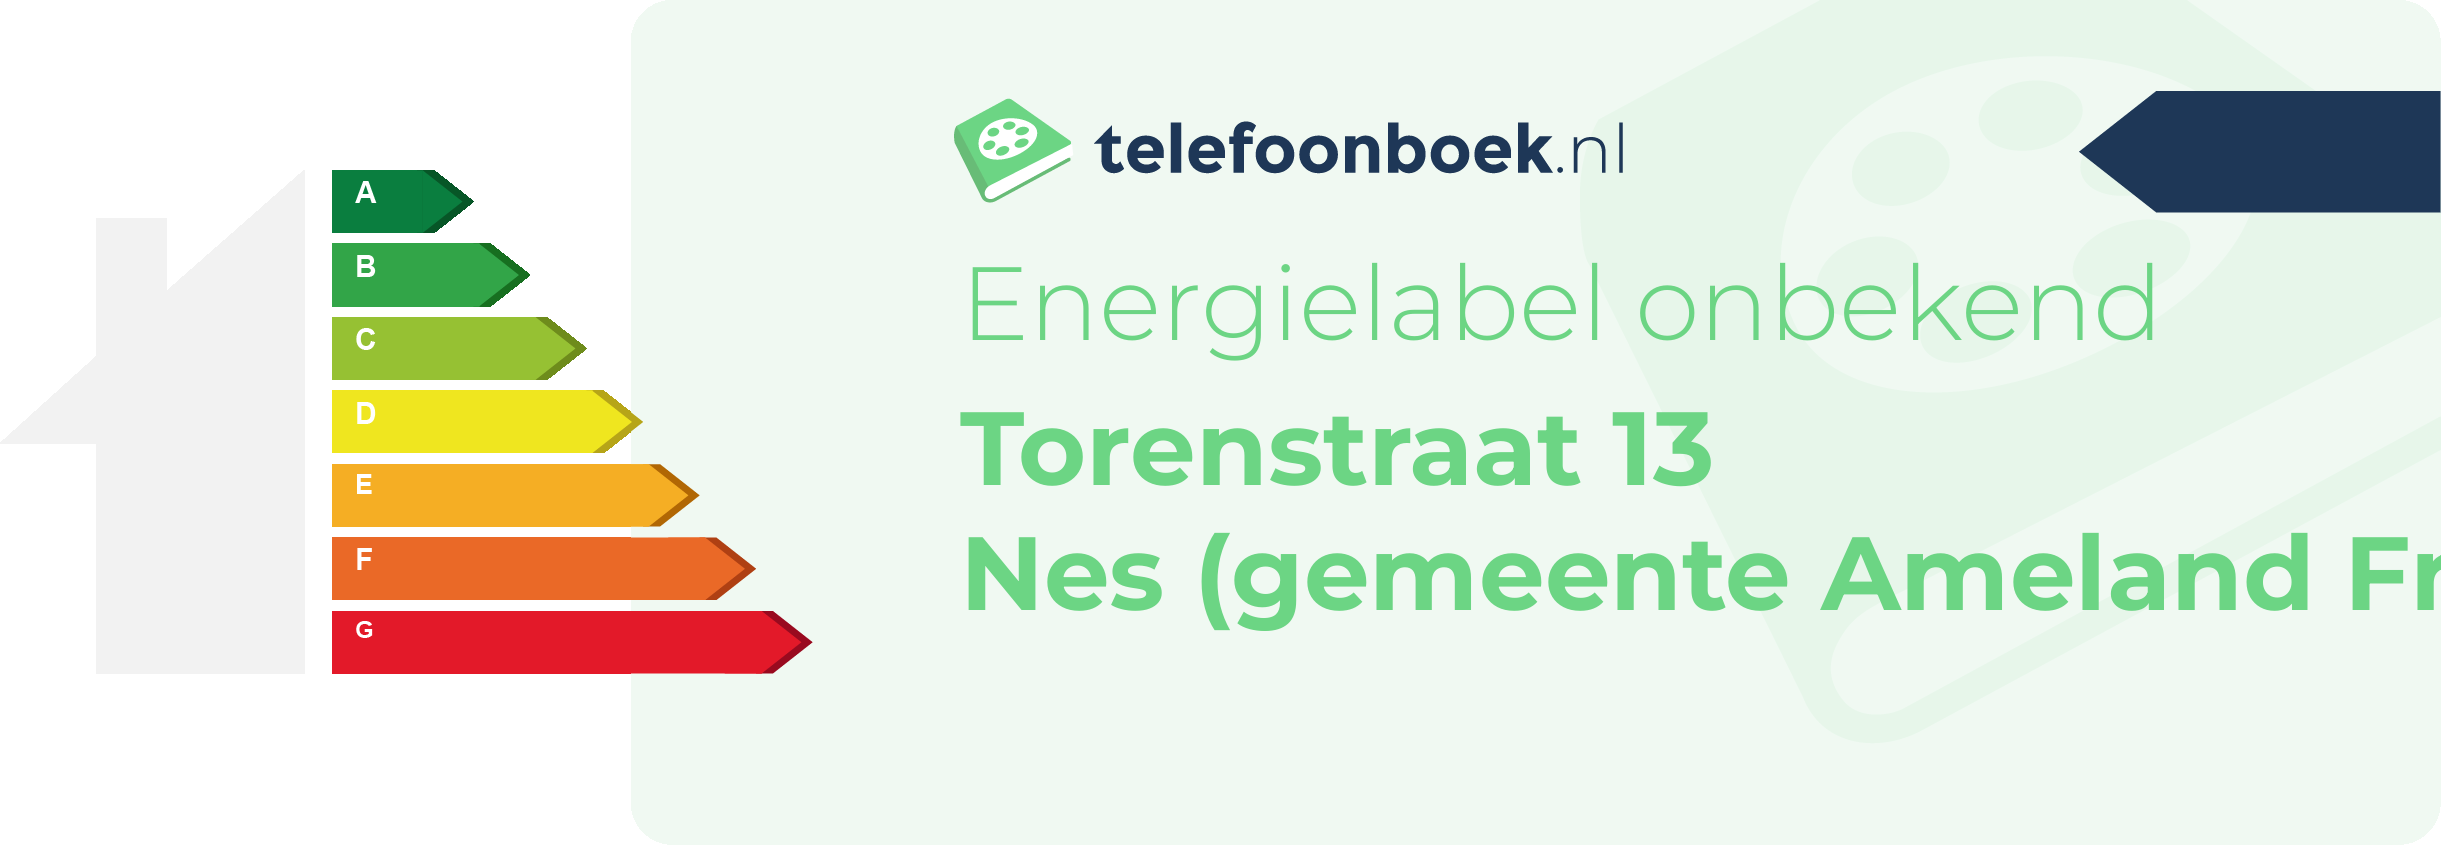 Energielabel Torenstraat 13 Nes (gemeente Ameland Friesland)